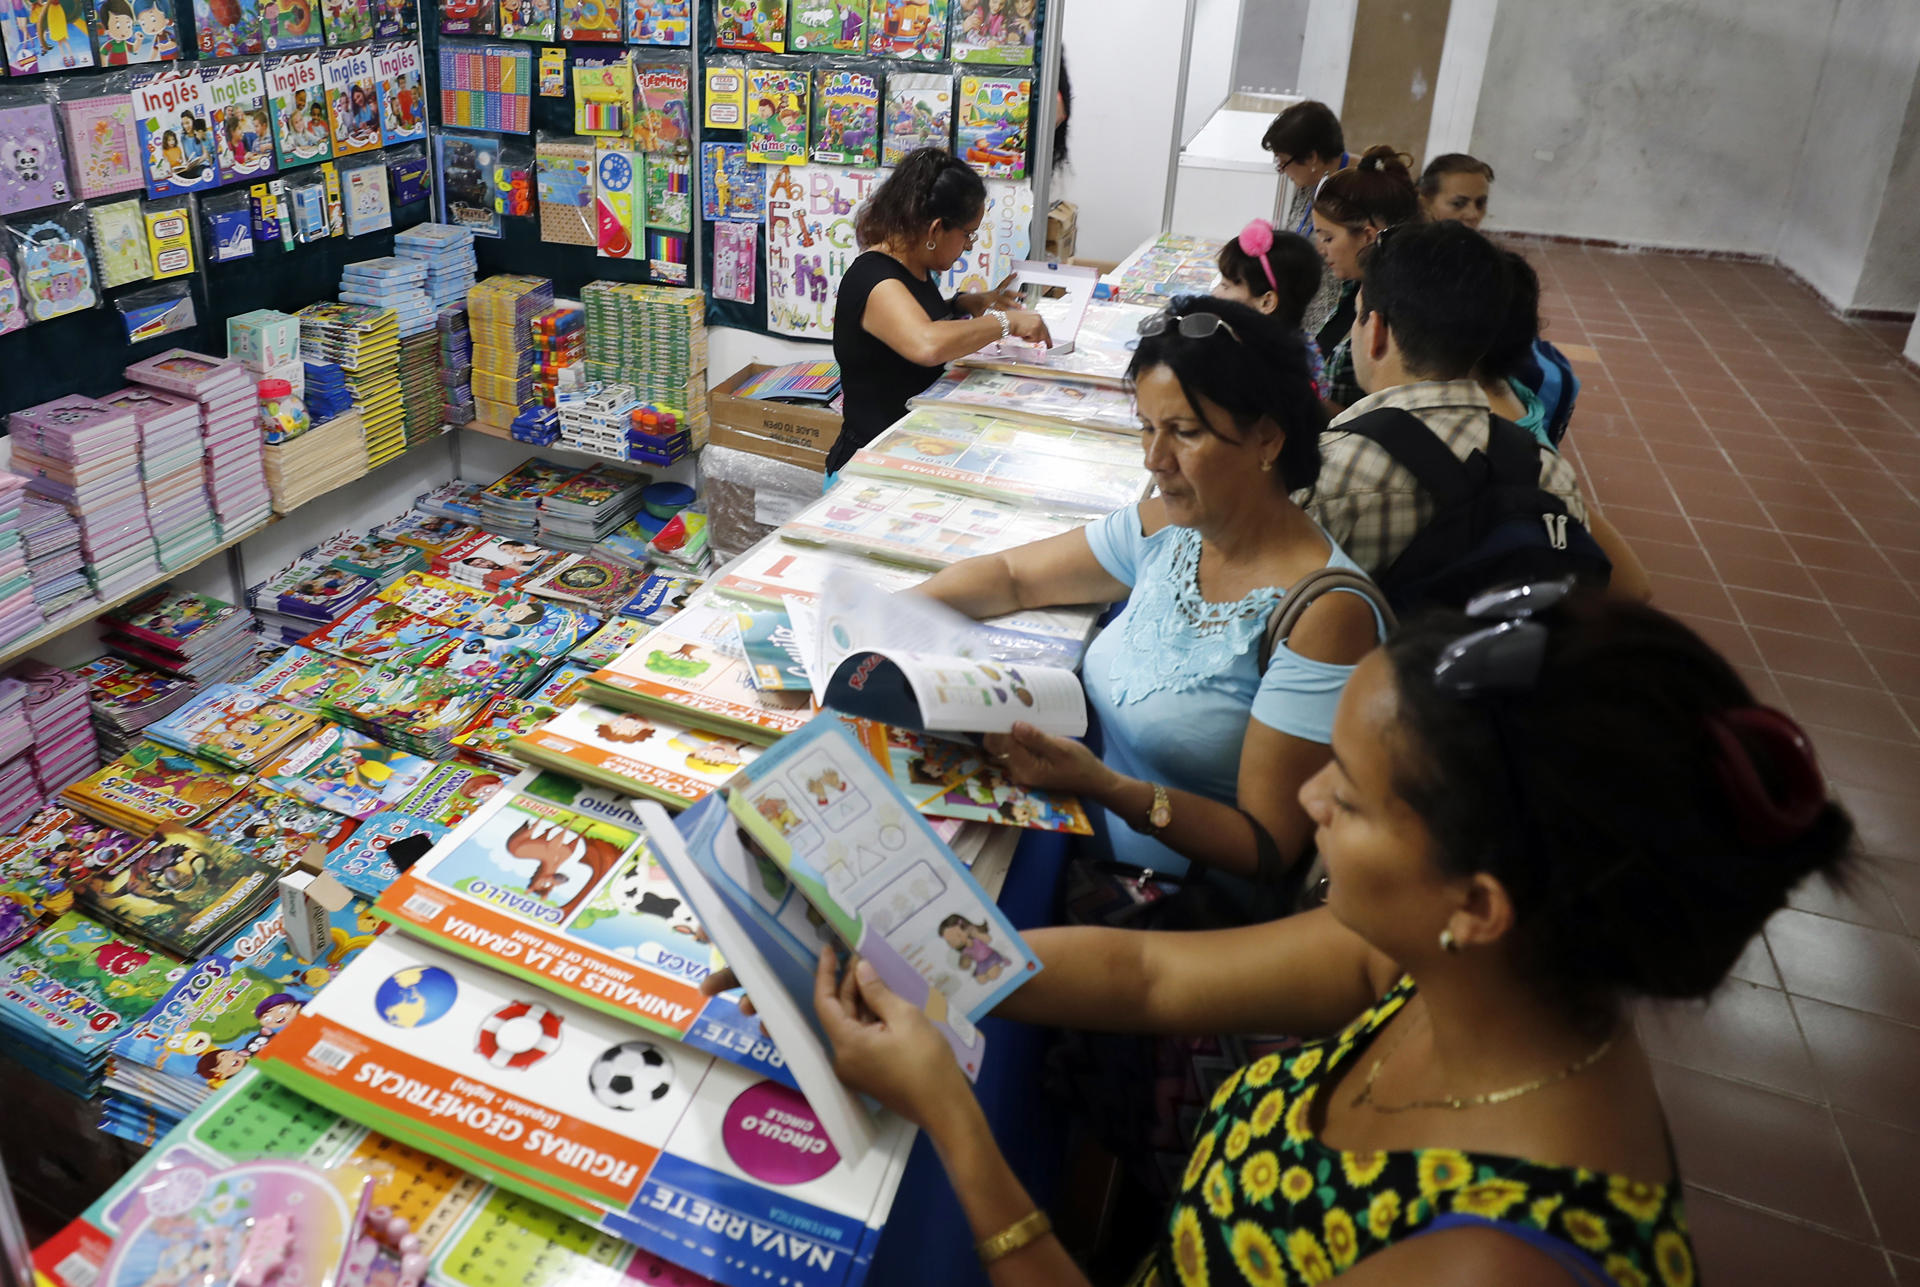 Personas asisten a la Feria del libro en La Habana, en una fotografía de archivo. EFE/Ernesto Mastrascusa